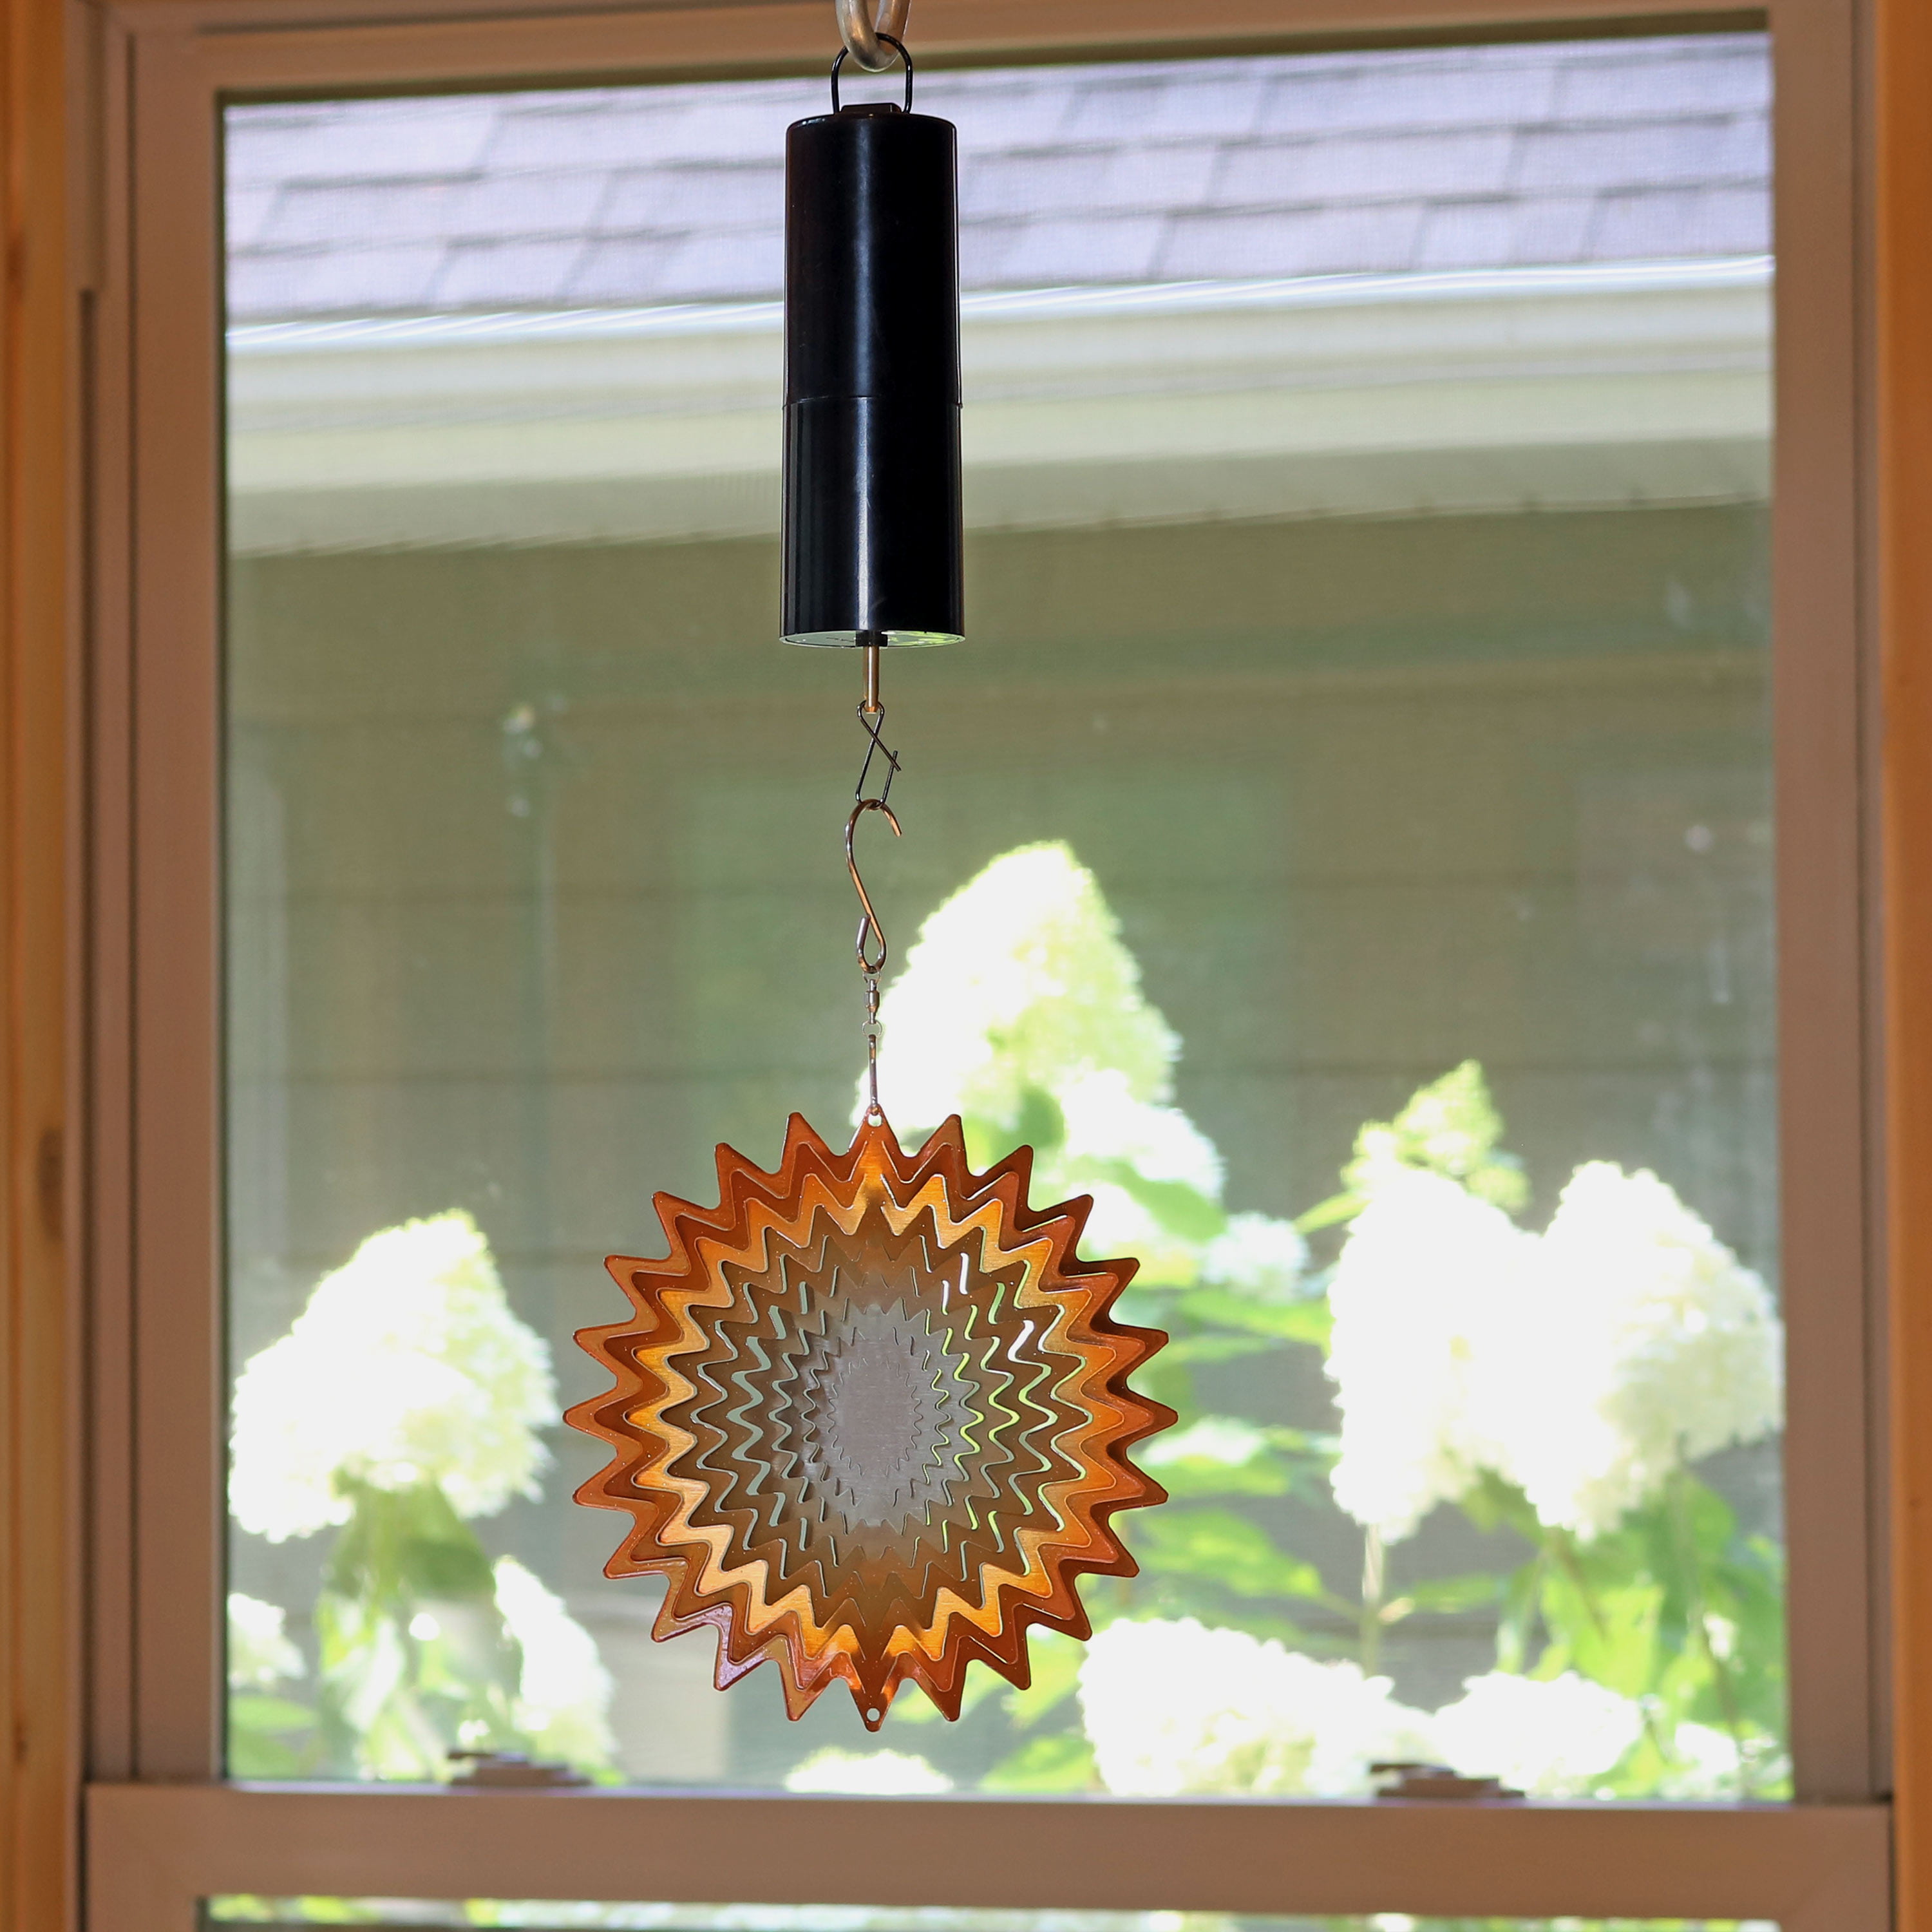 Sunnydaze Orange Star Whirligig Outdoor Wind Spinner with Hook 6-Inch